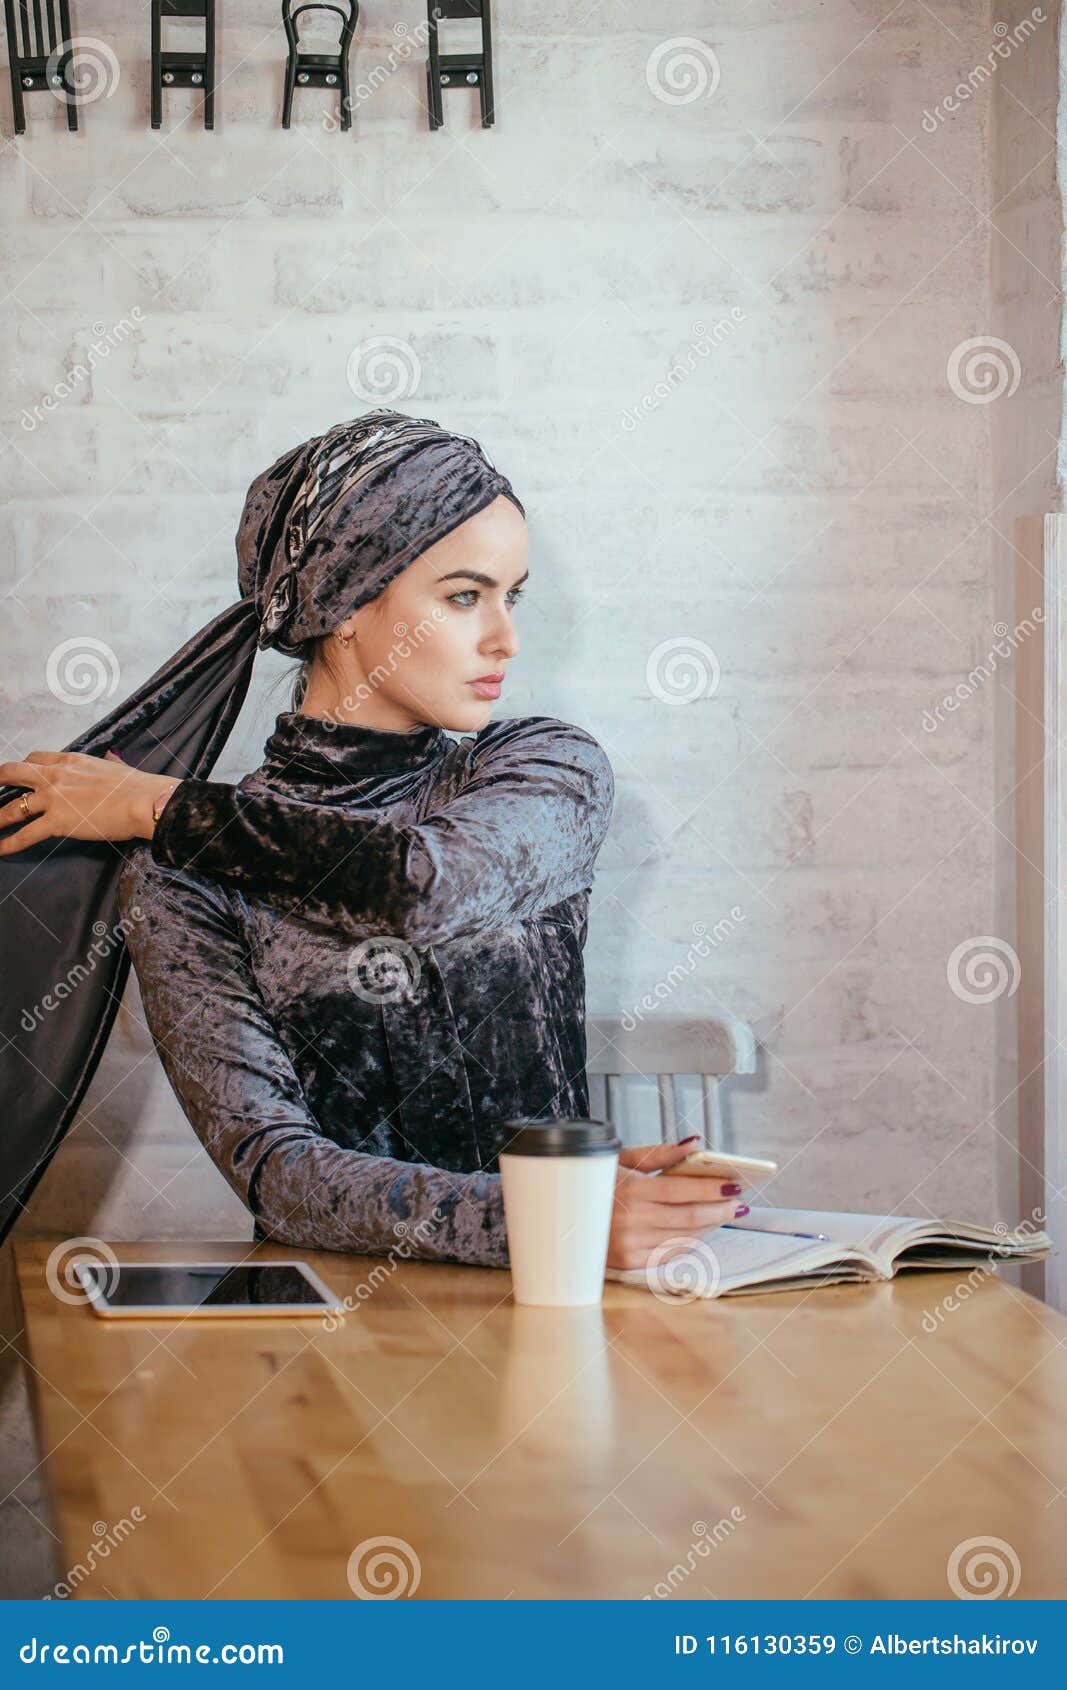 Muslim Women Holding Smartphonephone. Thinking of Good Memories. Stock ...